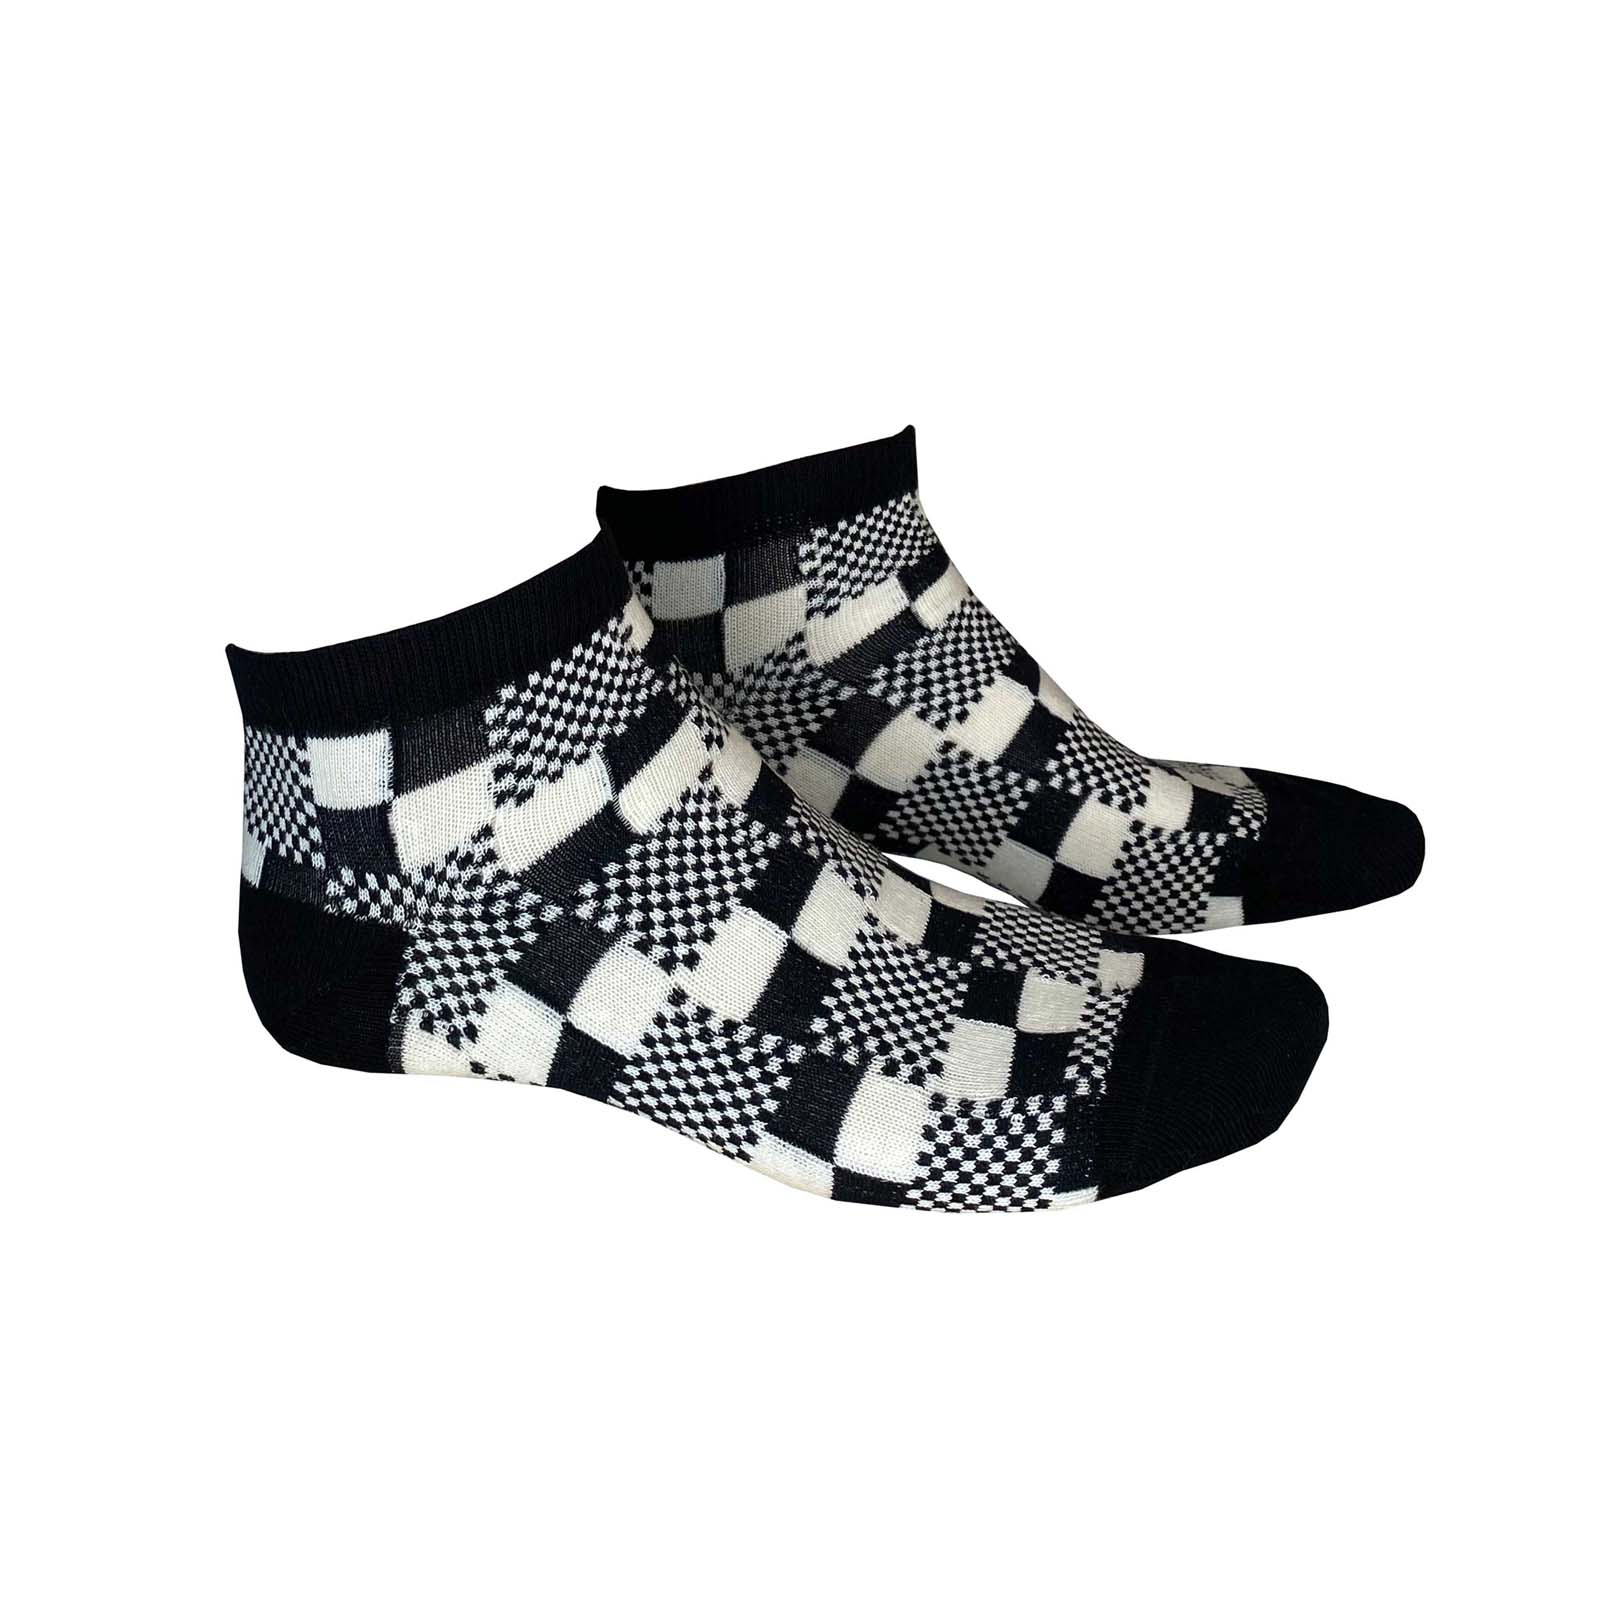 HUDSON Herren TRICKY -  43/46 - Herren Sneaker Socken mit auffälligem Schachbrett-Muster - Black (Schwarz)